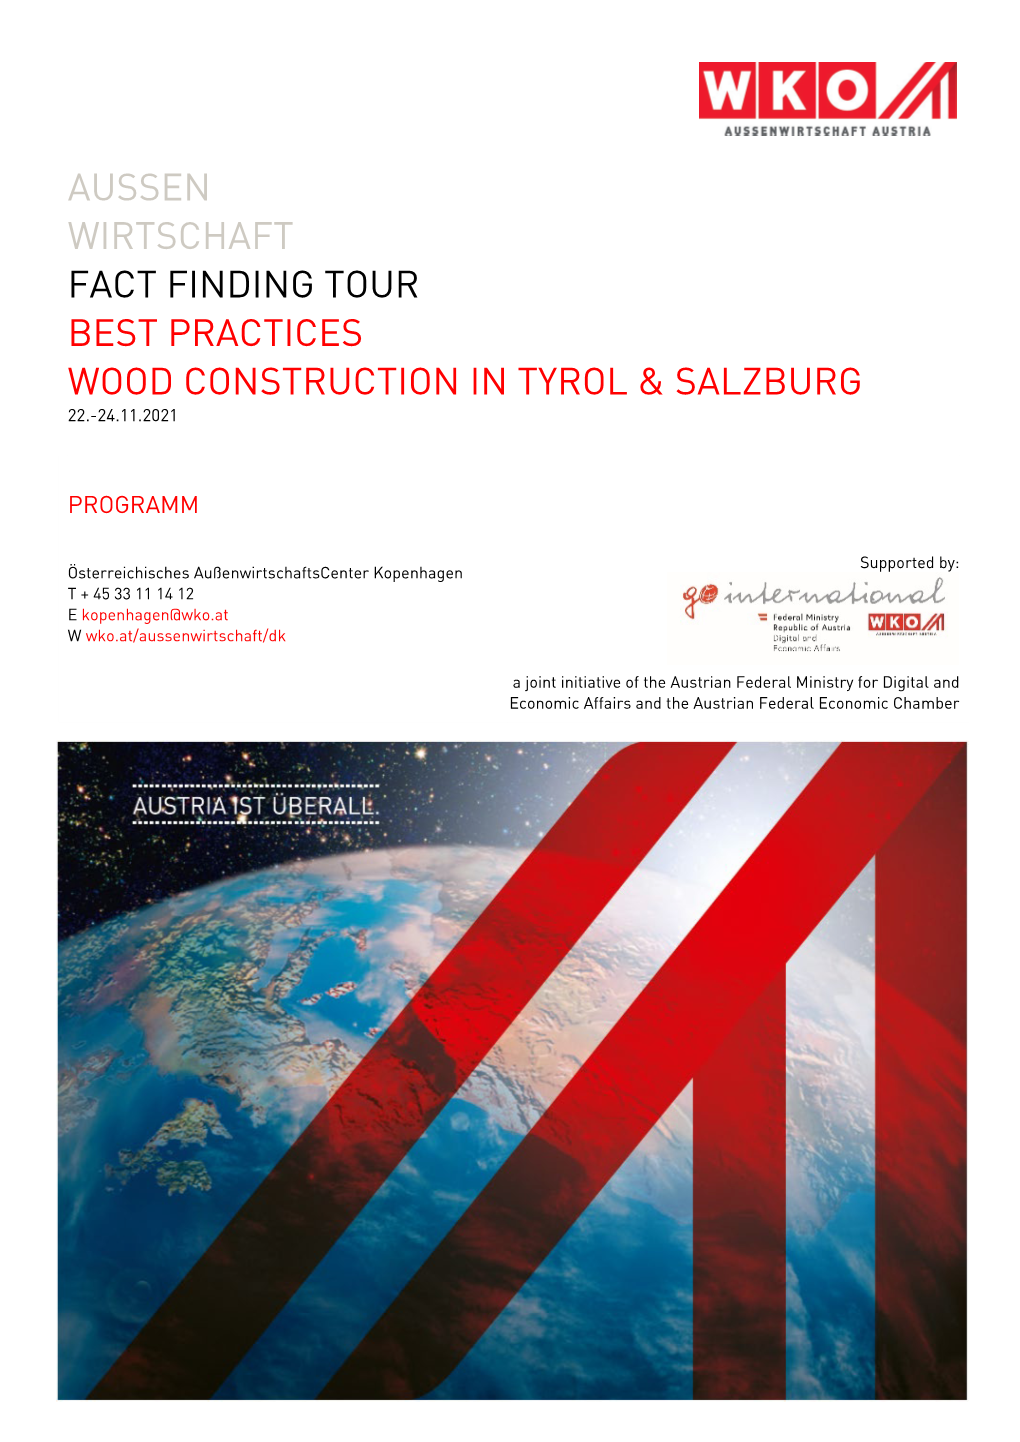 Aussen Wirtschaft Fact Finding Tour Best Practices Wood Construction in Tyrol & Salzburg 22.-24.11.2021